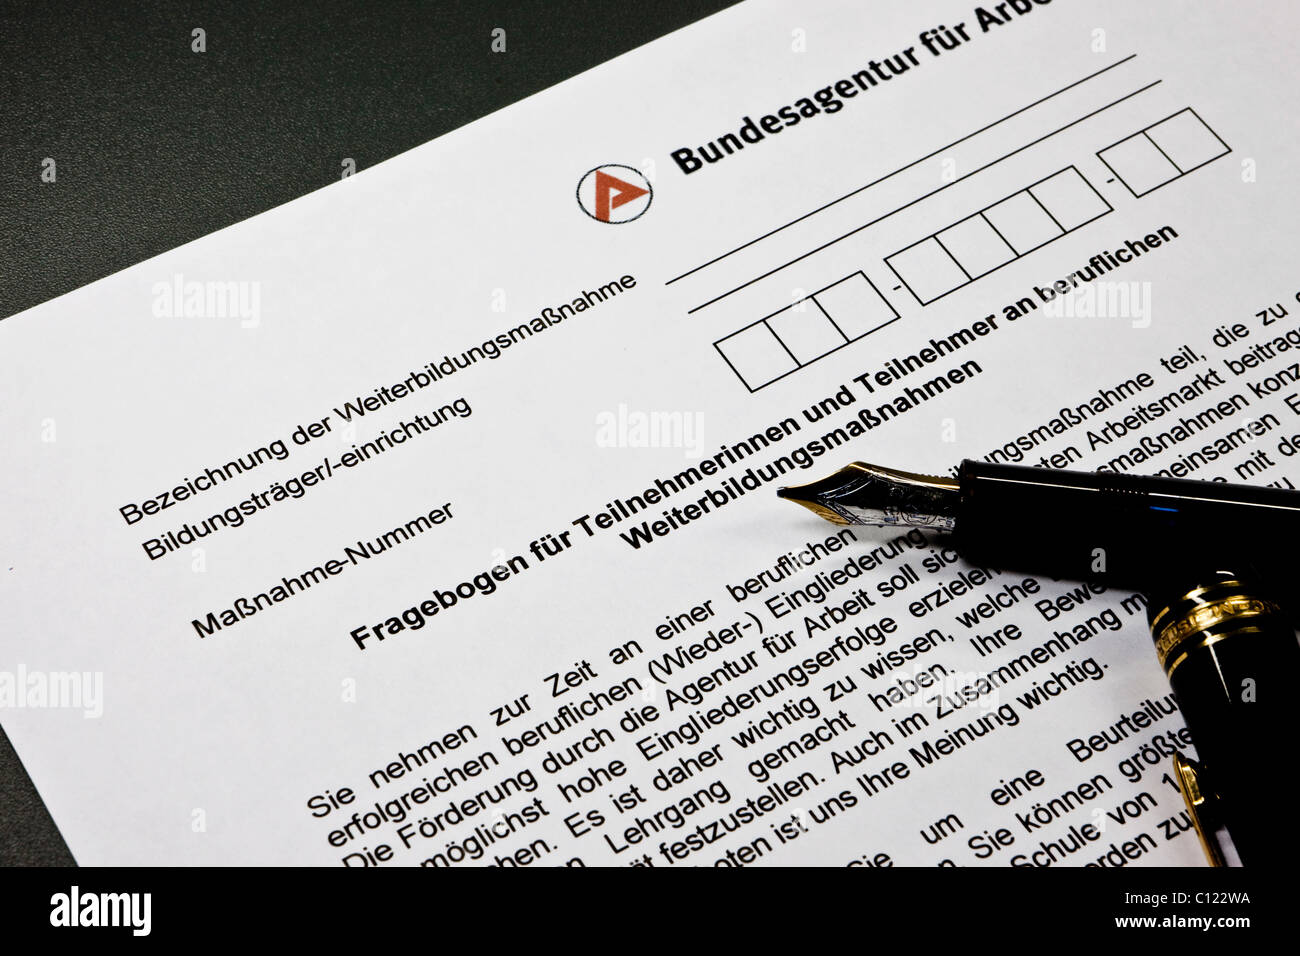 Cuestionario para la presentación a la Bundesagentur fuer Arbeit, Agencia Federal de Empleo alemana, Cuestionario para participantes Foto de stock